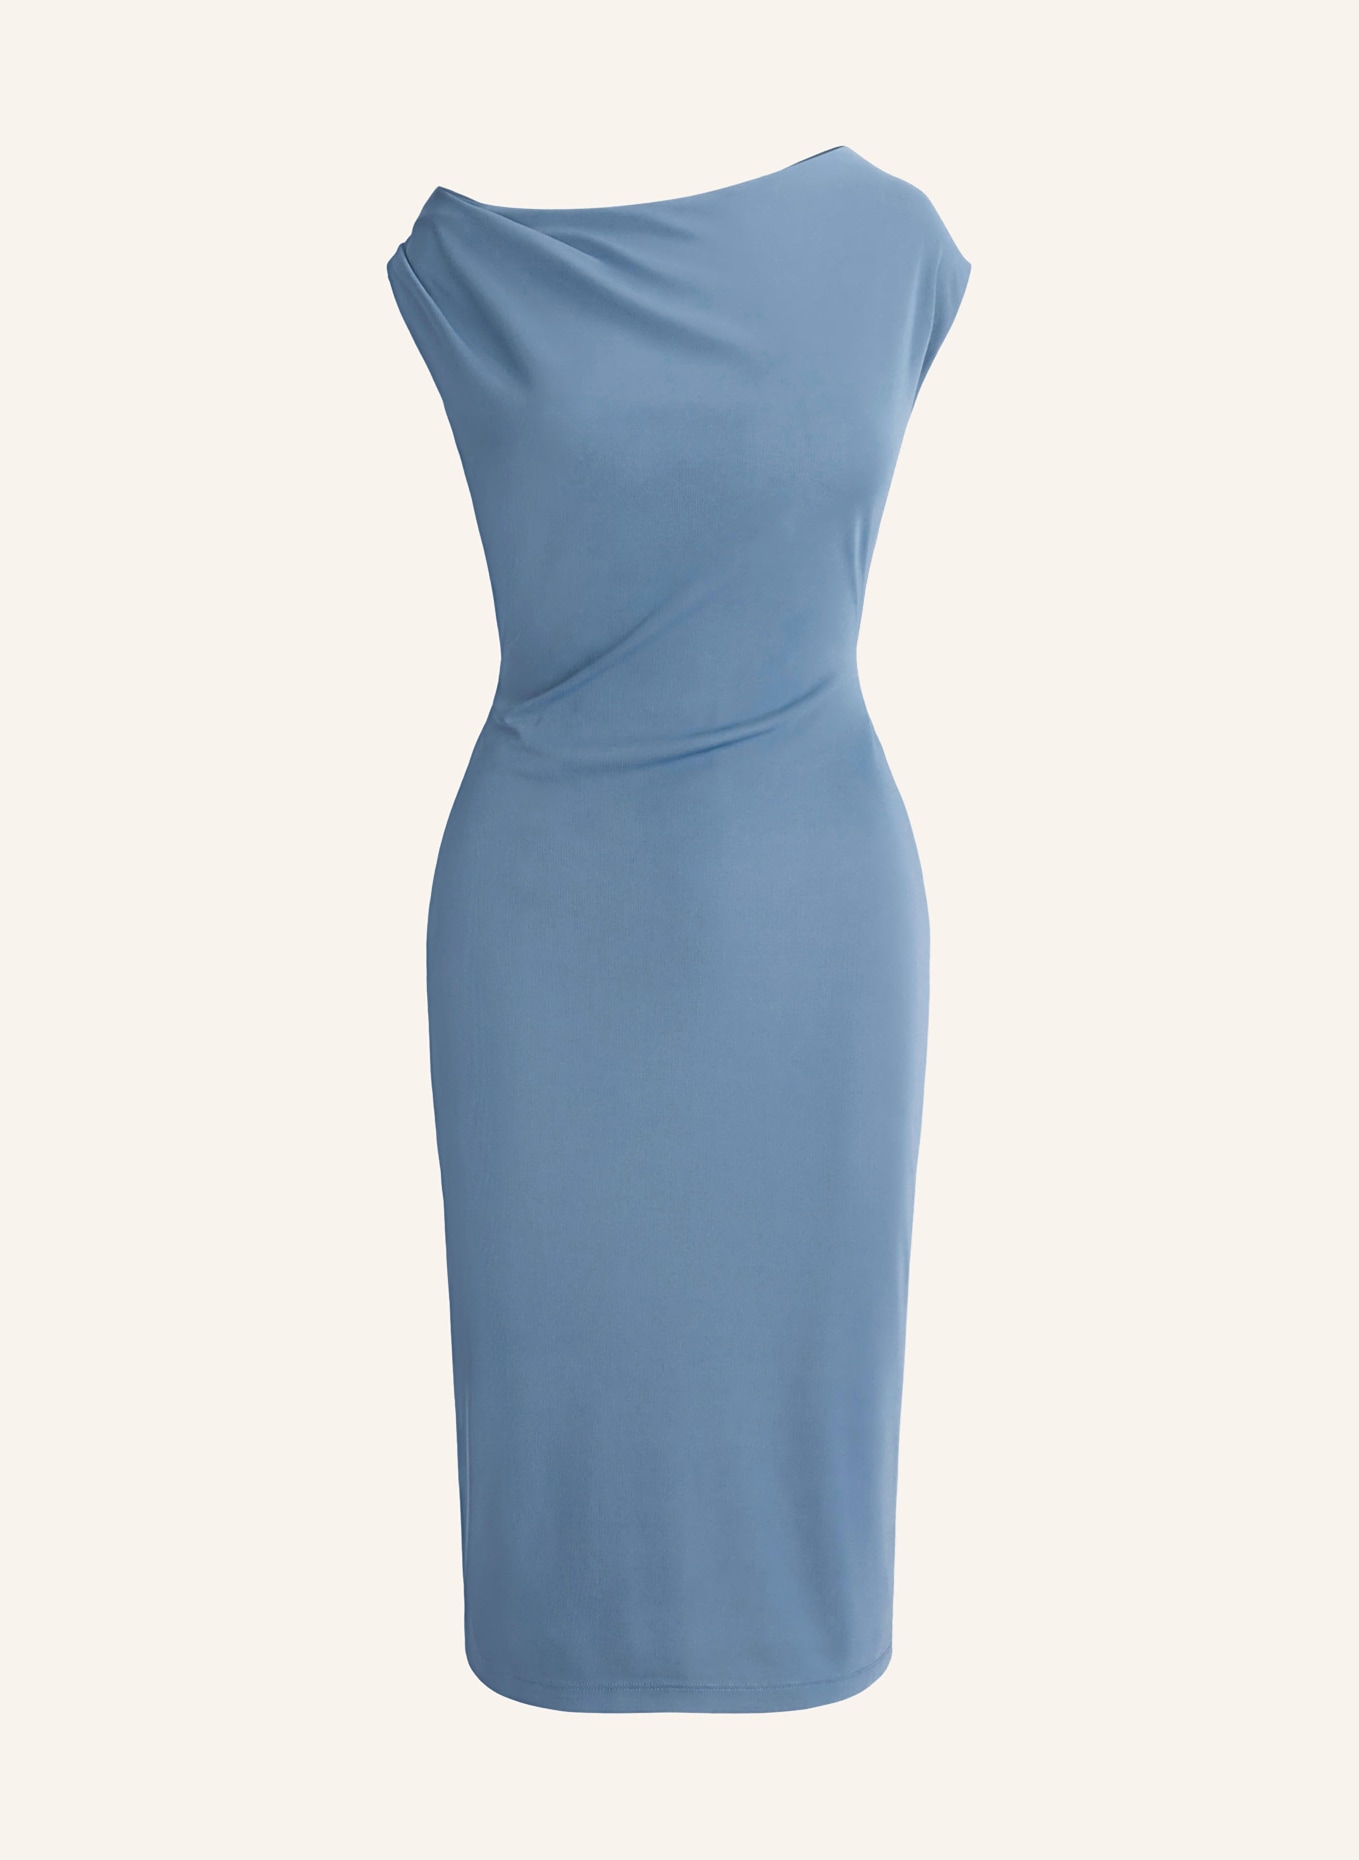 LAUREN RALPH LAUREN Dress with cut-out, Color: BLUE GRAY (Image 1)